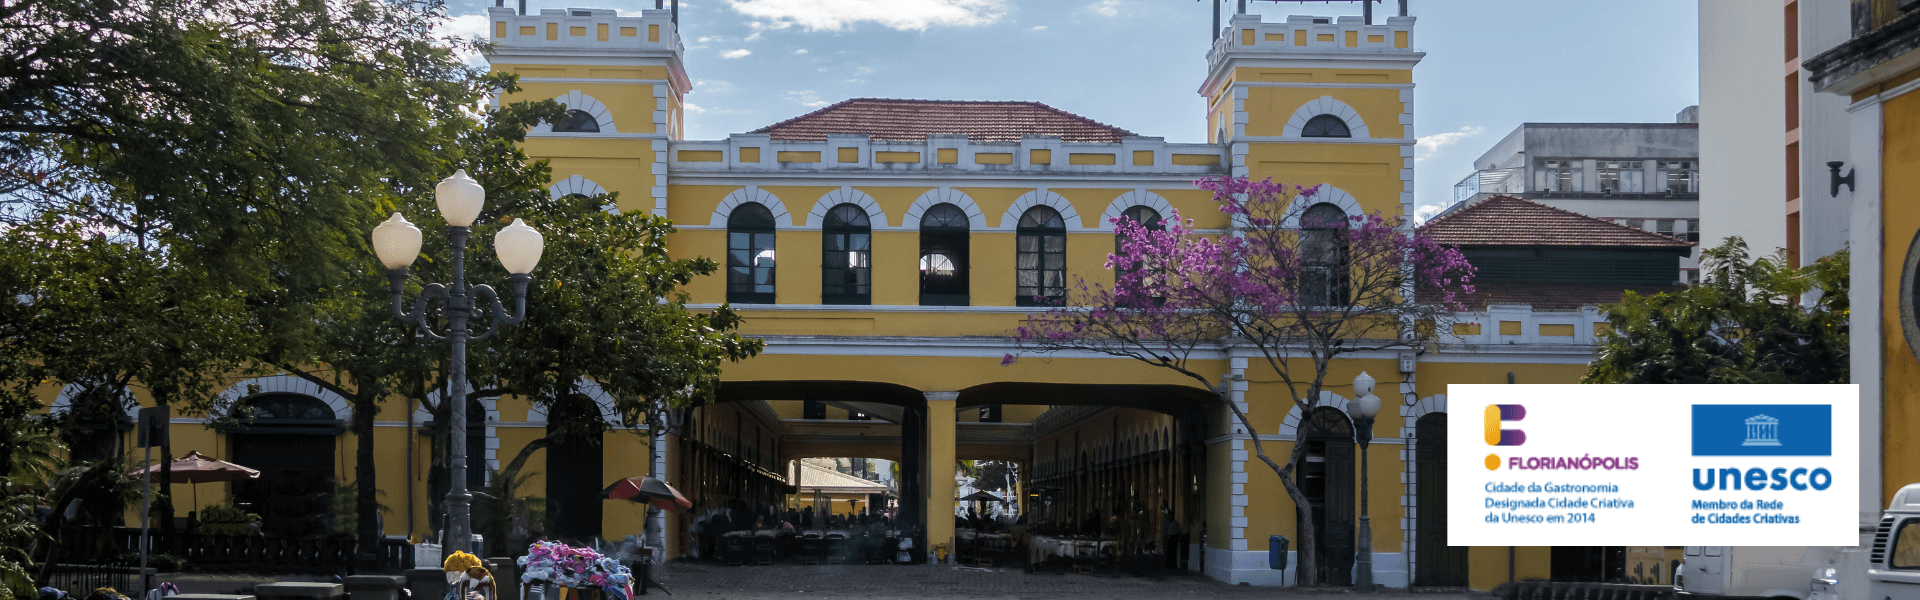 Florianópolis, Cidade Criativa Unesco da Gastronomia – utilize o selo no seu estabelecimento